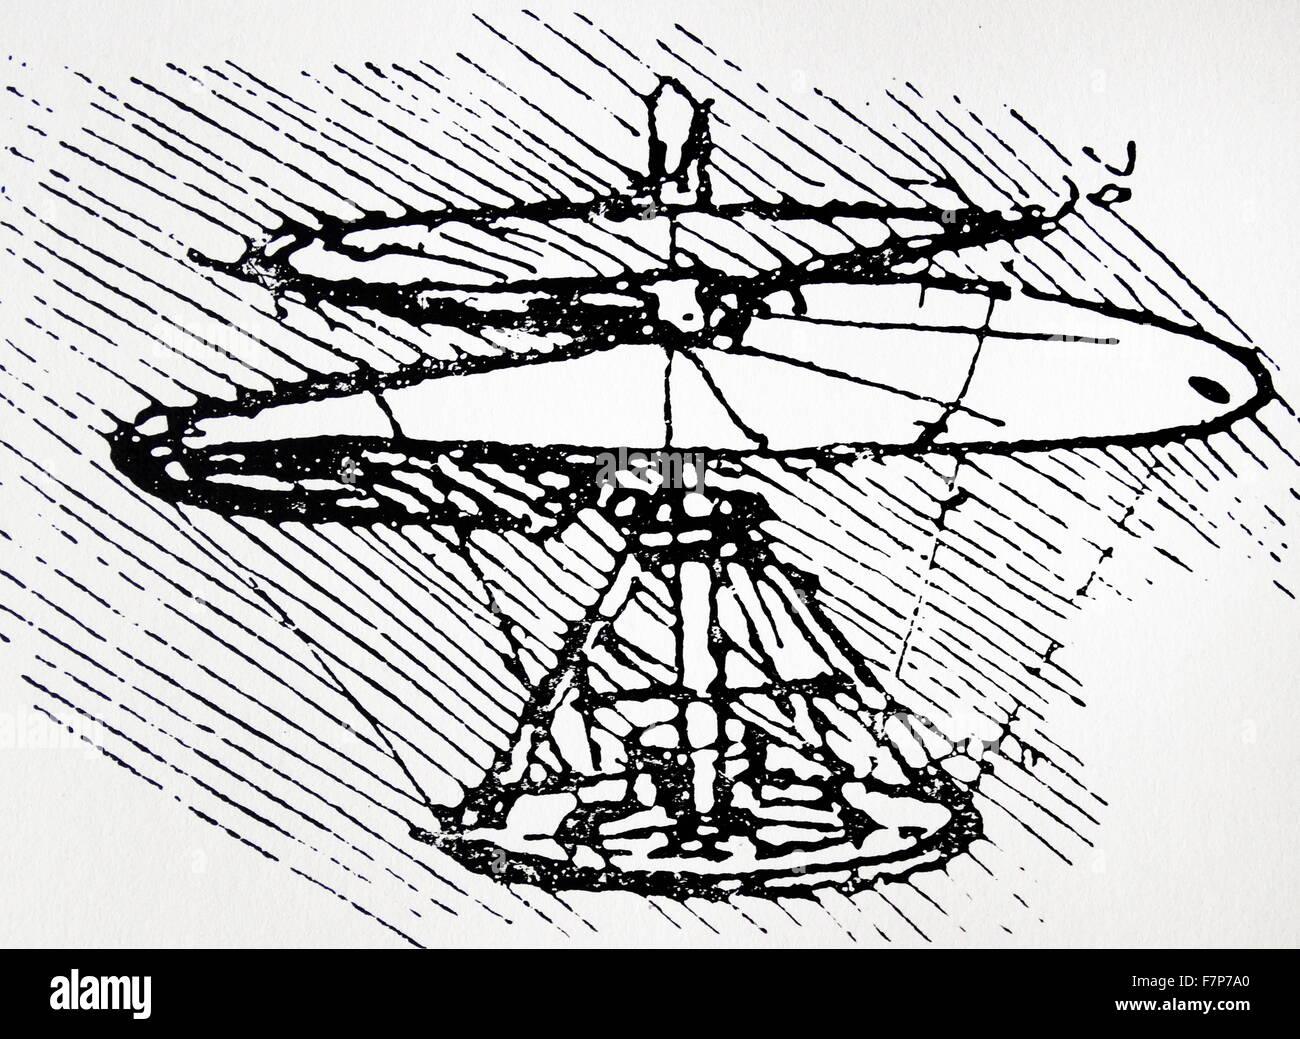 Leonardo da Vinci - conception d'un hélicoptère vis Archimedian Banque D'Images